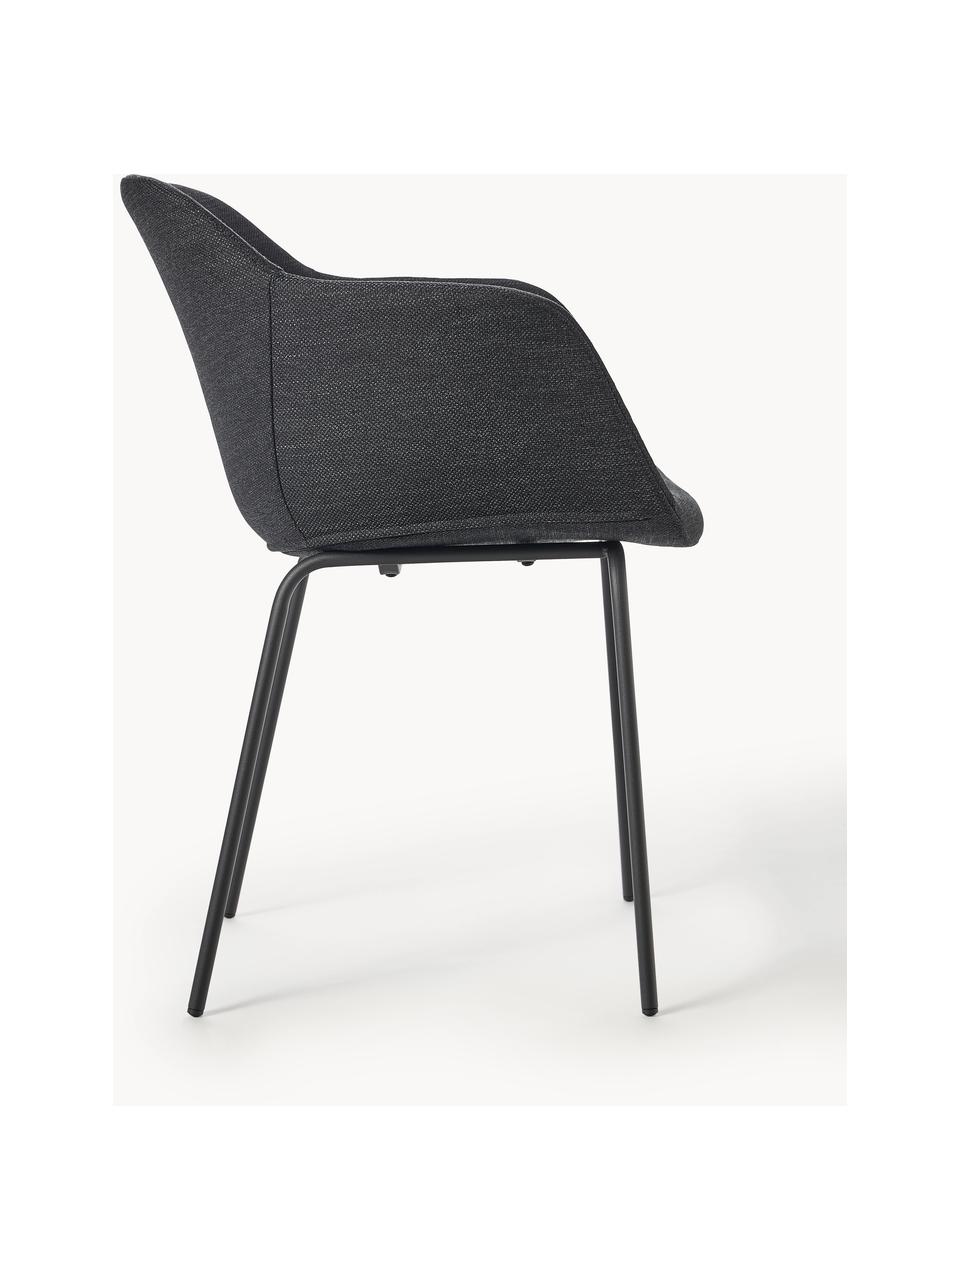 Chaise rembourrée avec assise étroite Fiji, Tissu noir, larg. 58 x prof. 56 cm